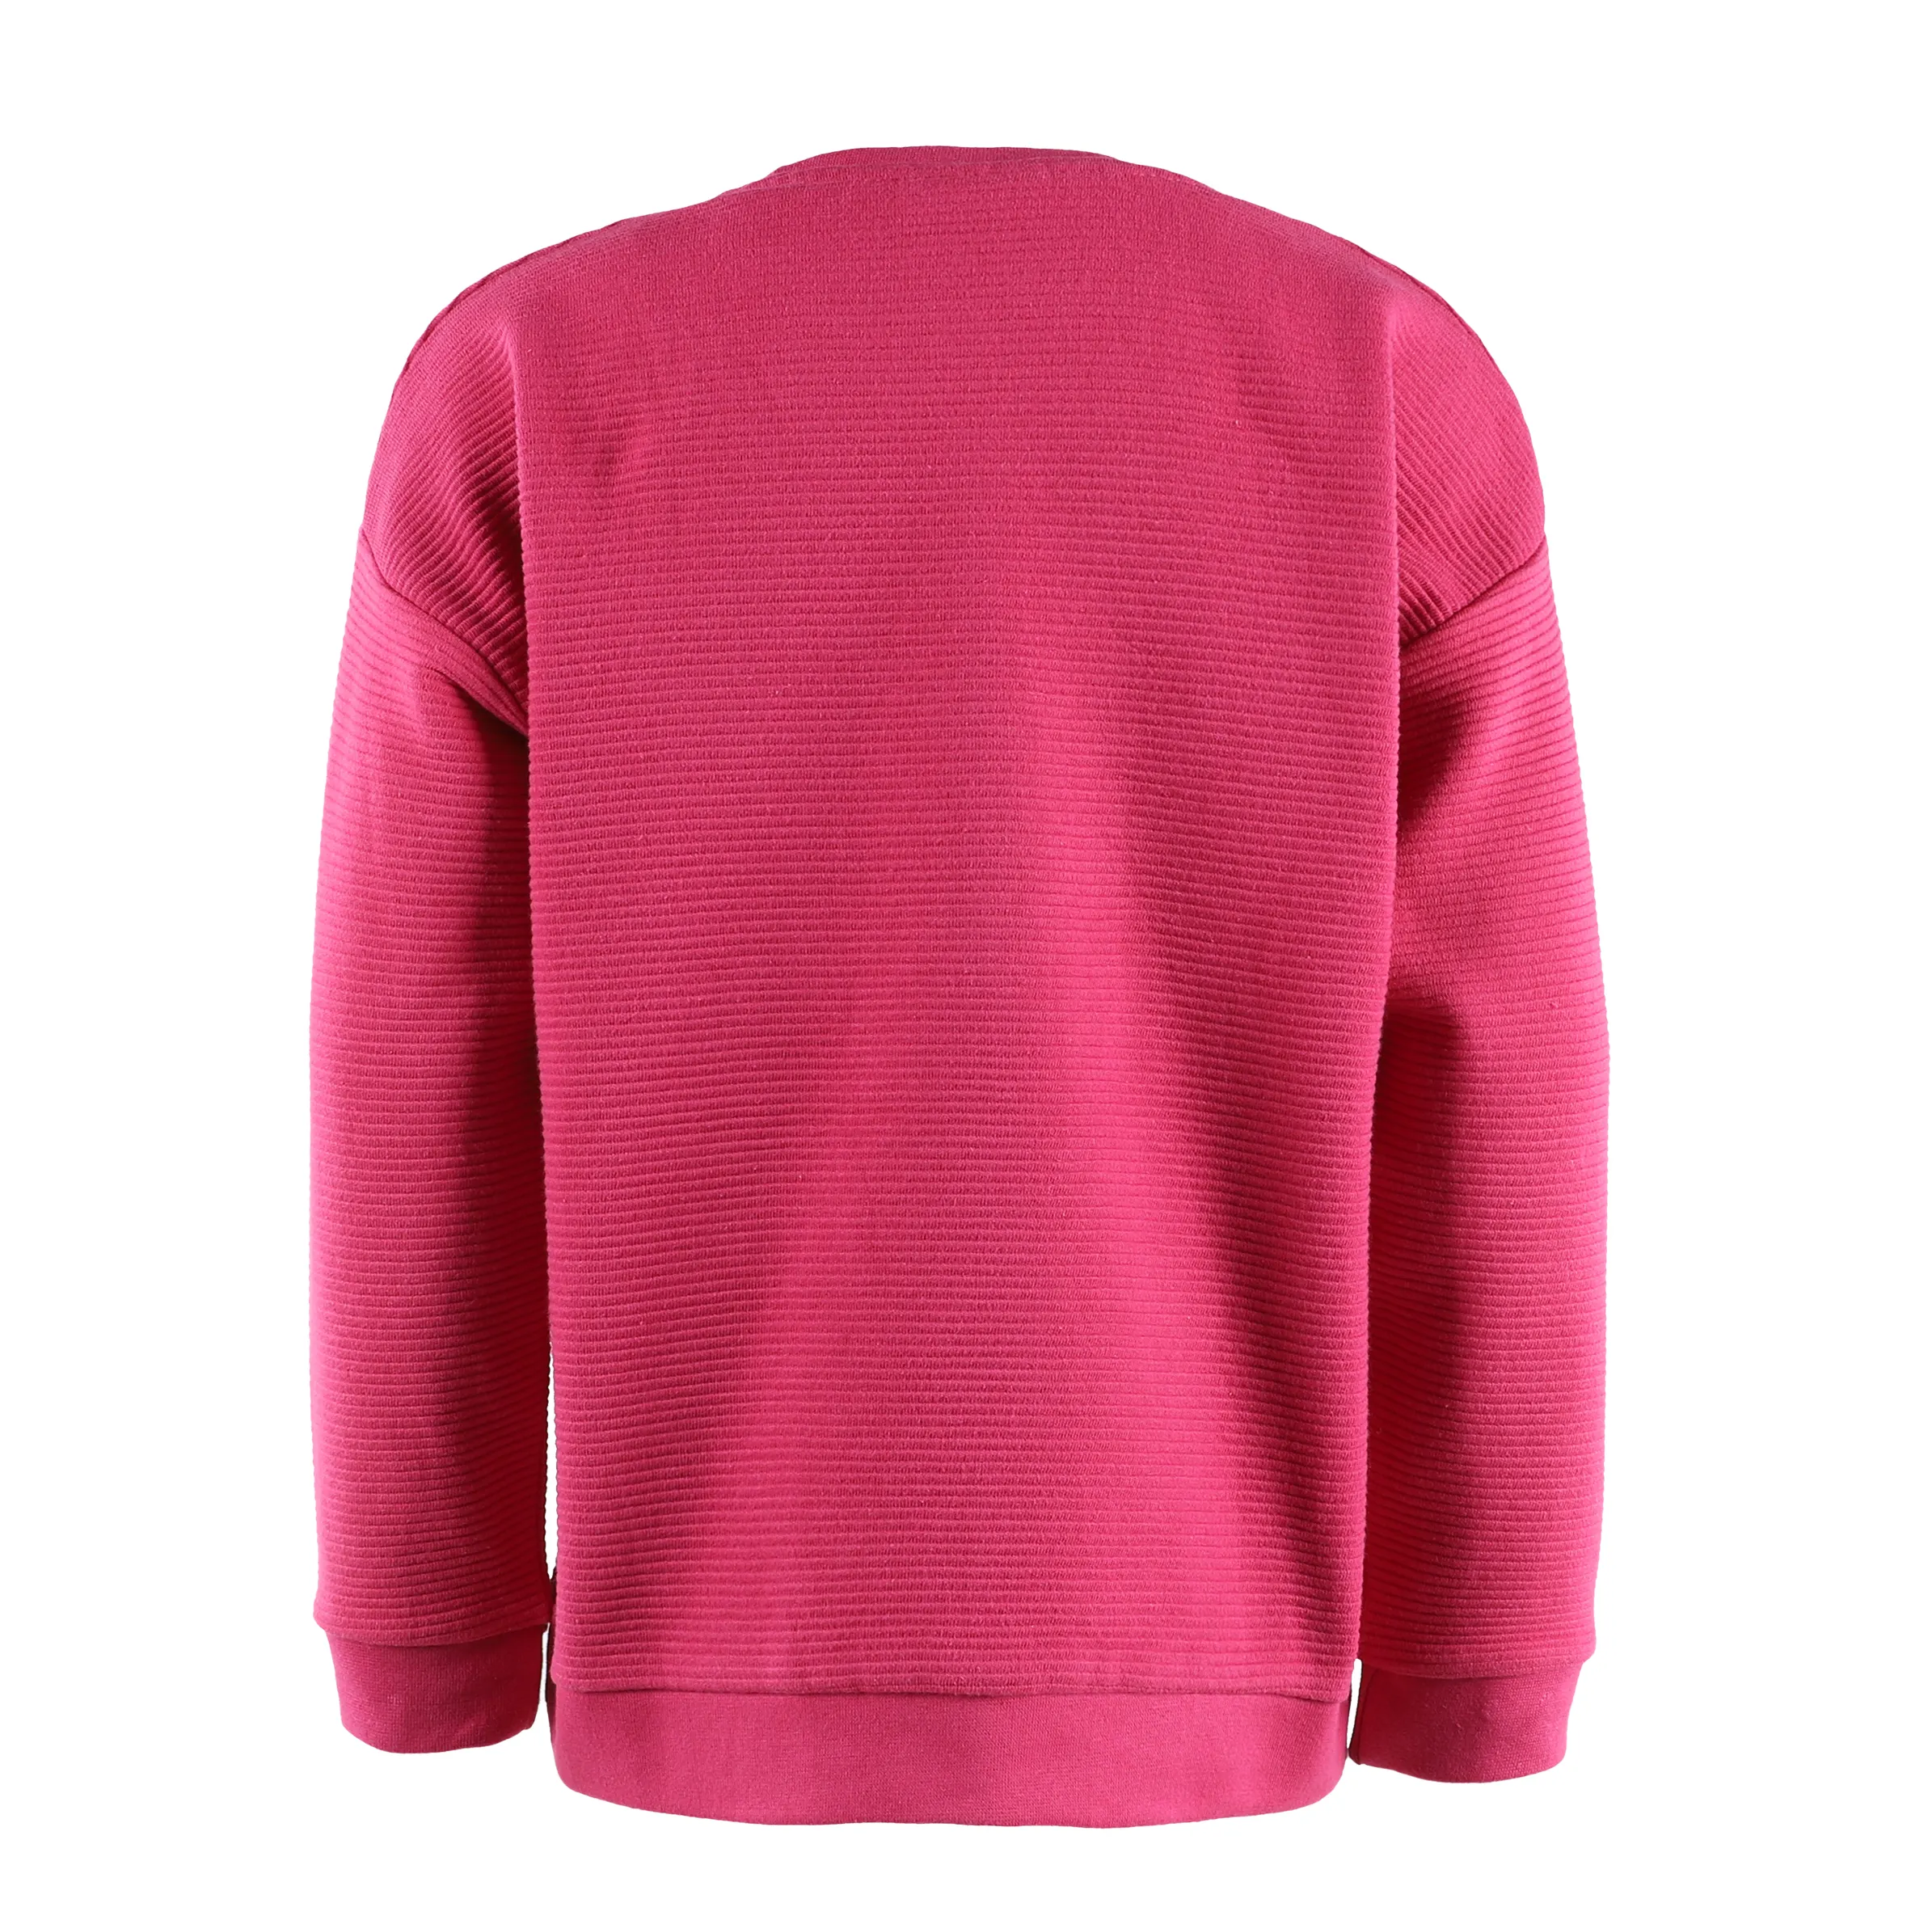 Stop + Go KM Sweater in pink mit Wendepailletten Herz Pink 881604 CRANBERRY 2